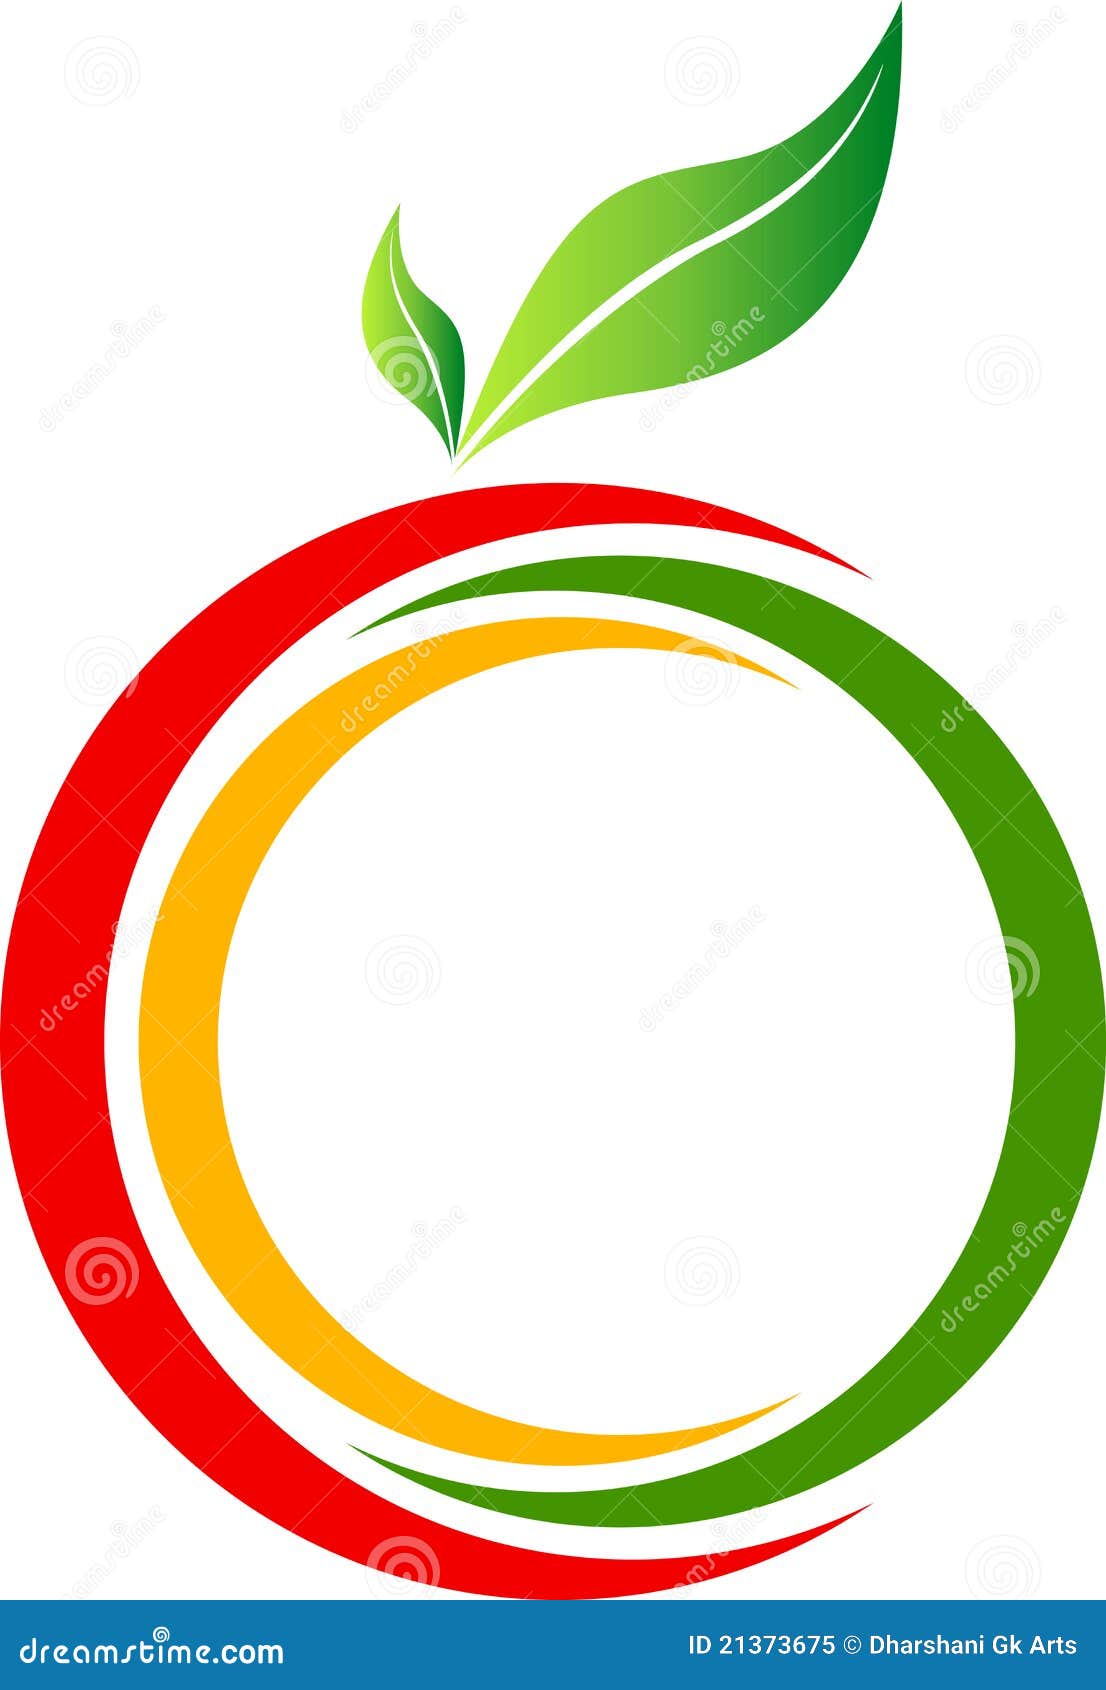 Fruit Logo Royalty Free Stock Photo - Image: 21373675